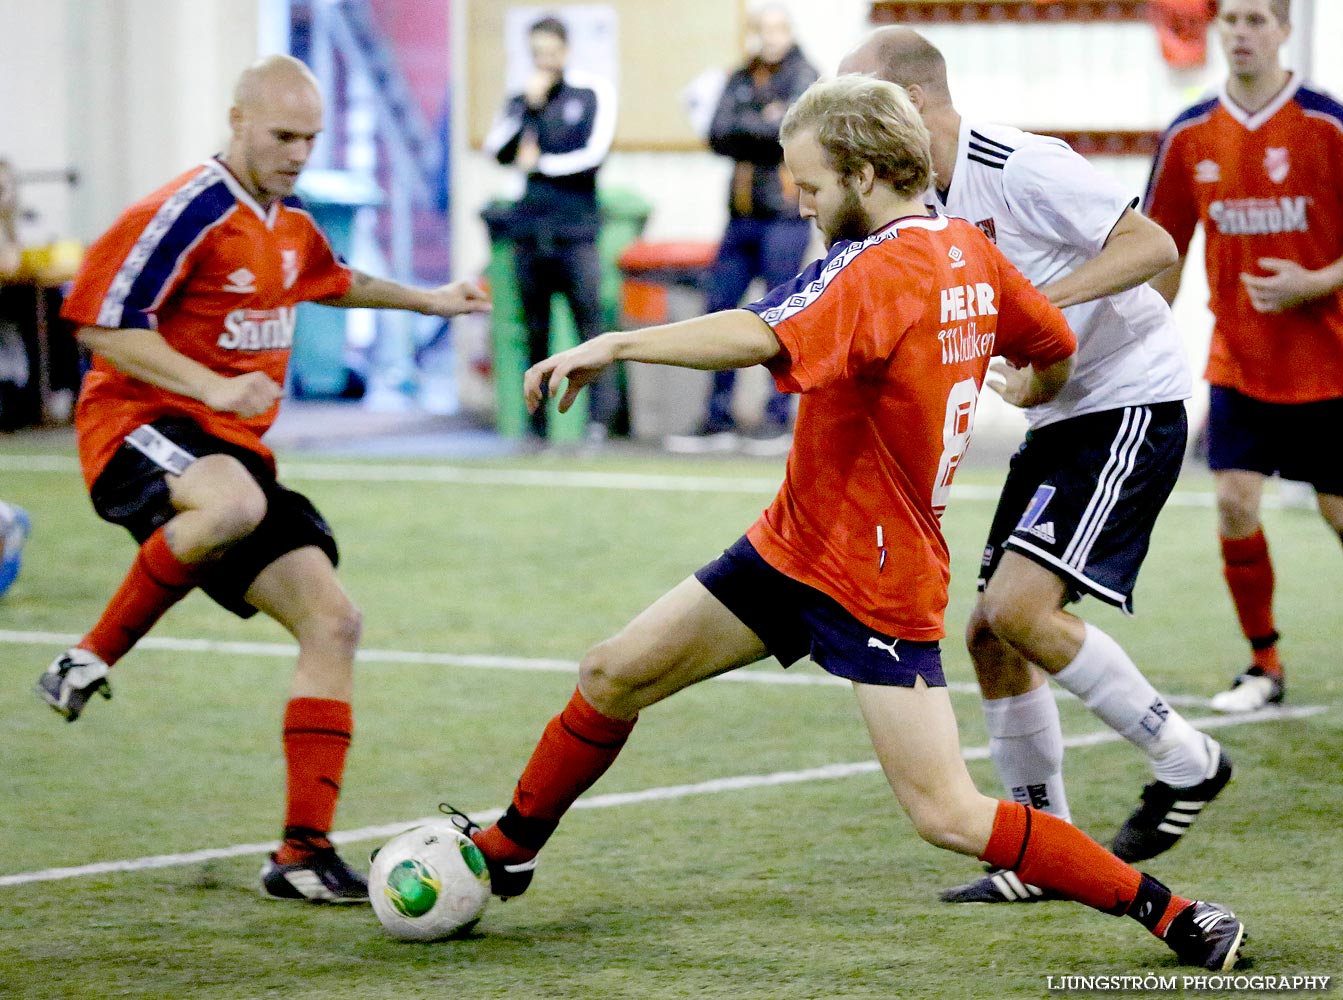 Skövde Soccer Championship,mix,Ulvahallen,Ulvåker,Sverige,Fotboll,,2014,100305